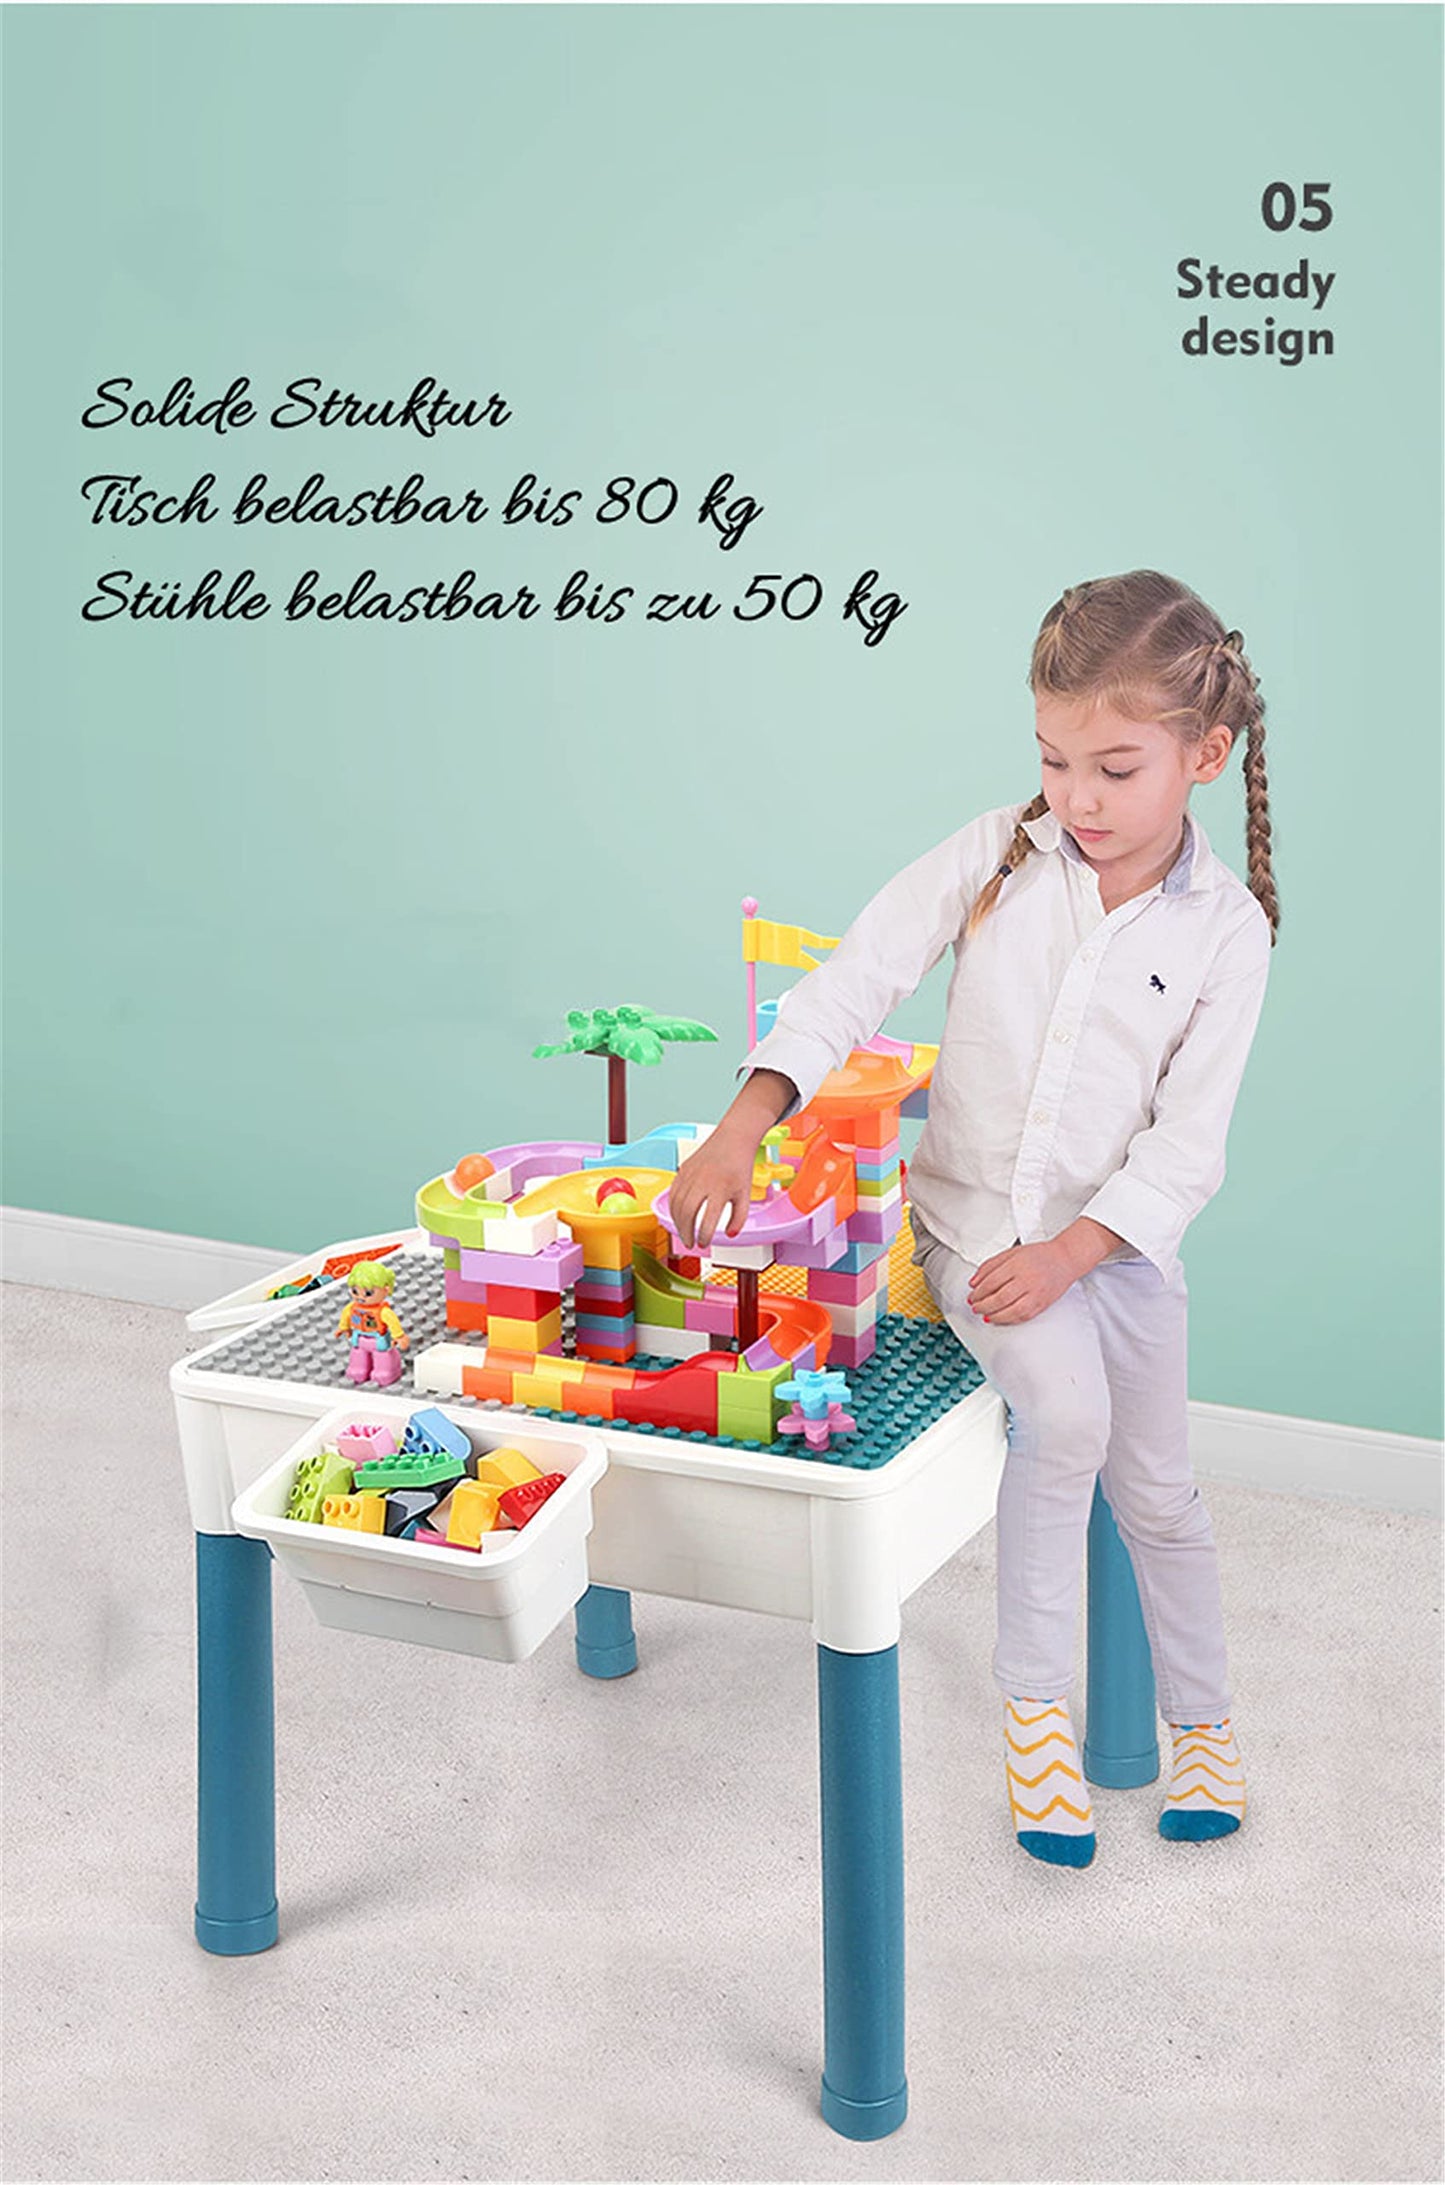 6-in-1 Kindertisch Stuhl Set - Das Ultimative Aktivitätserlebnis für Kinder